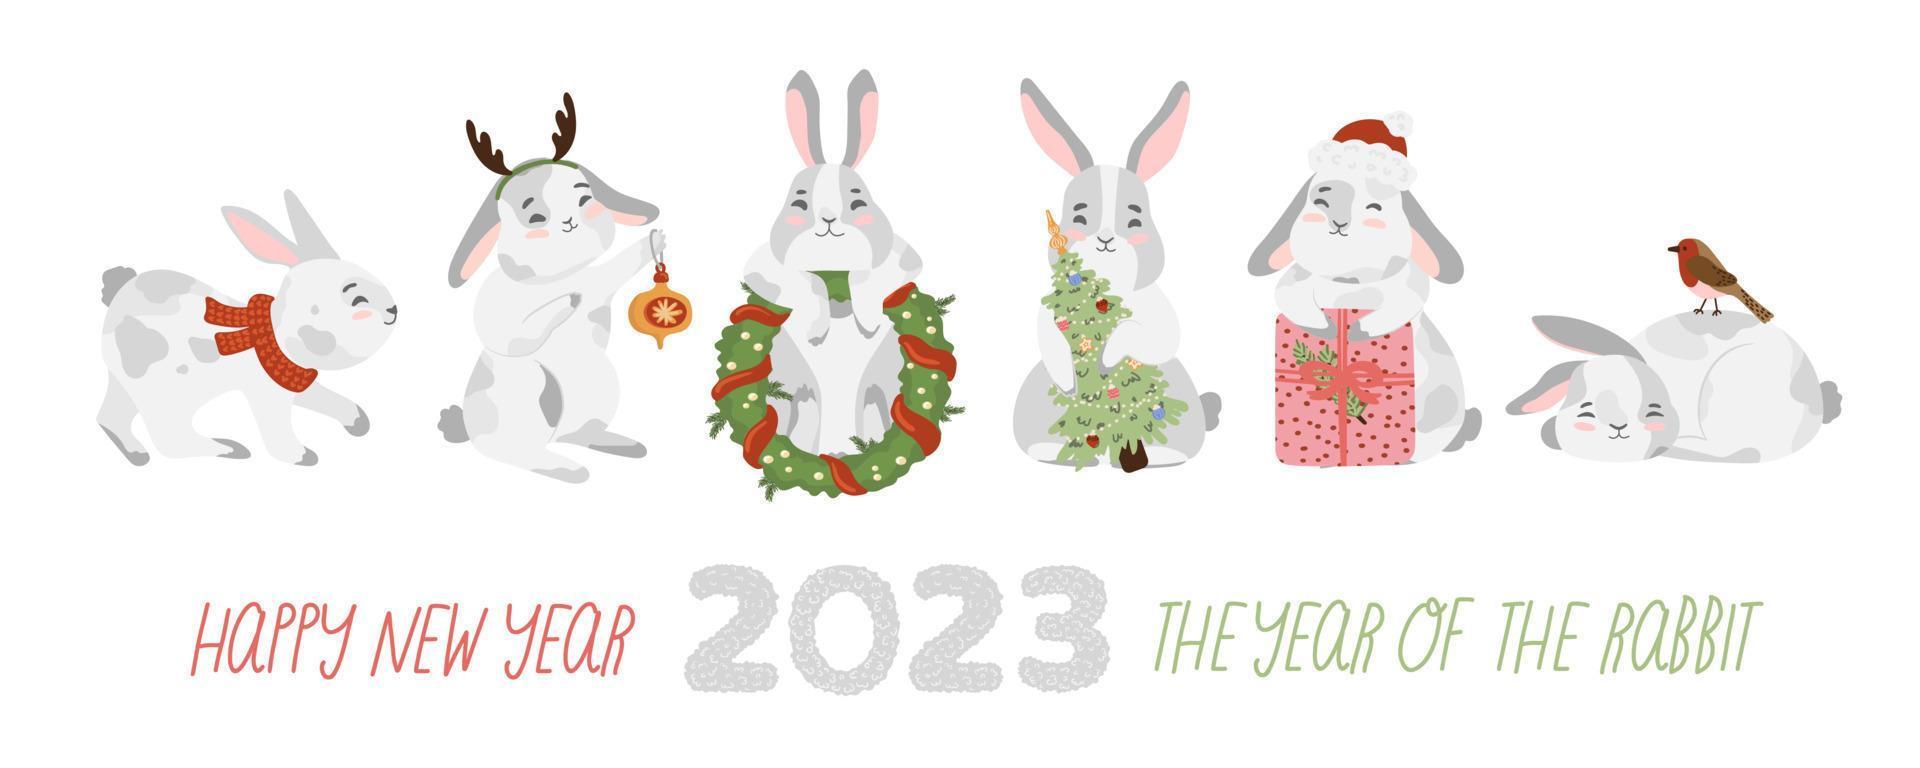 jul kanin, kanin, hare samling med första advent krans, gåva låda, närvarande, santa hatt, jul träd, röd scarf, jul dekorationer rådjur hjorthorn, bubbla, robin fågel. Lycklig ny år 2023 baner vektor